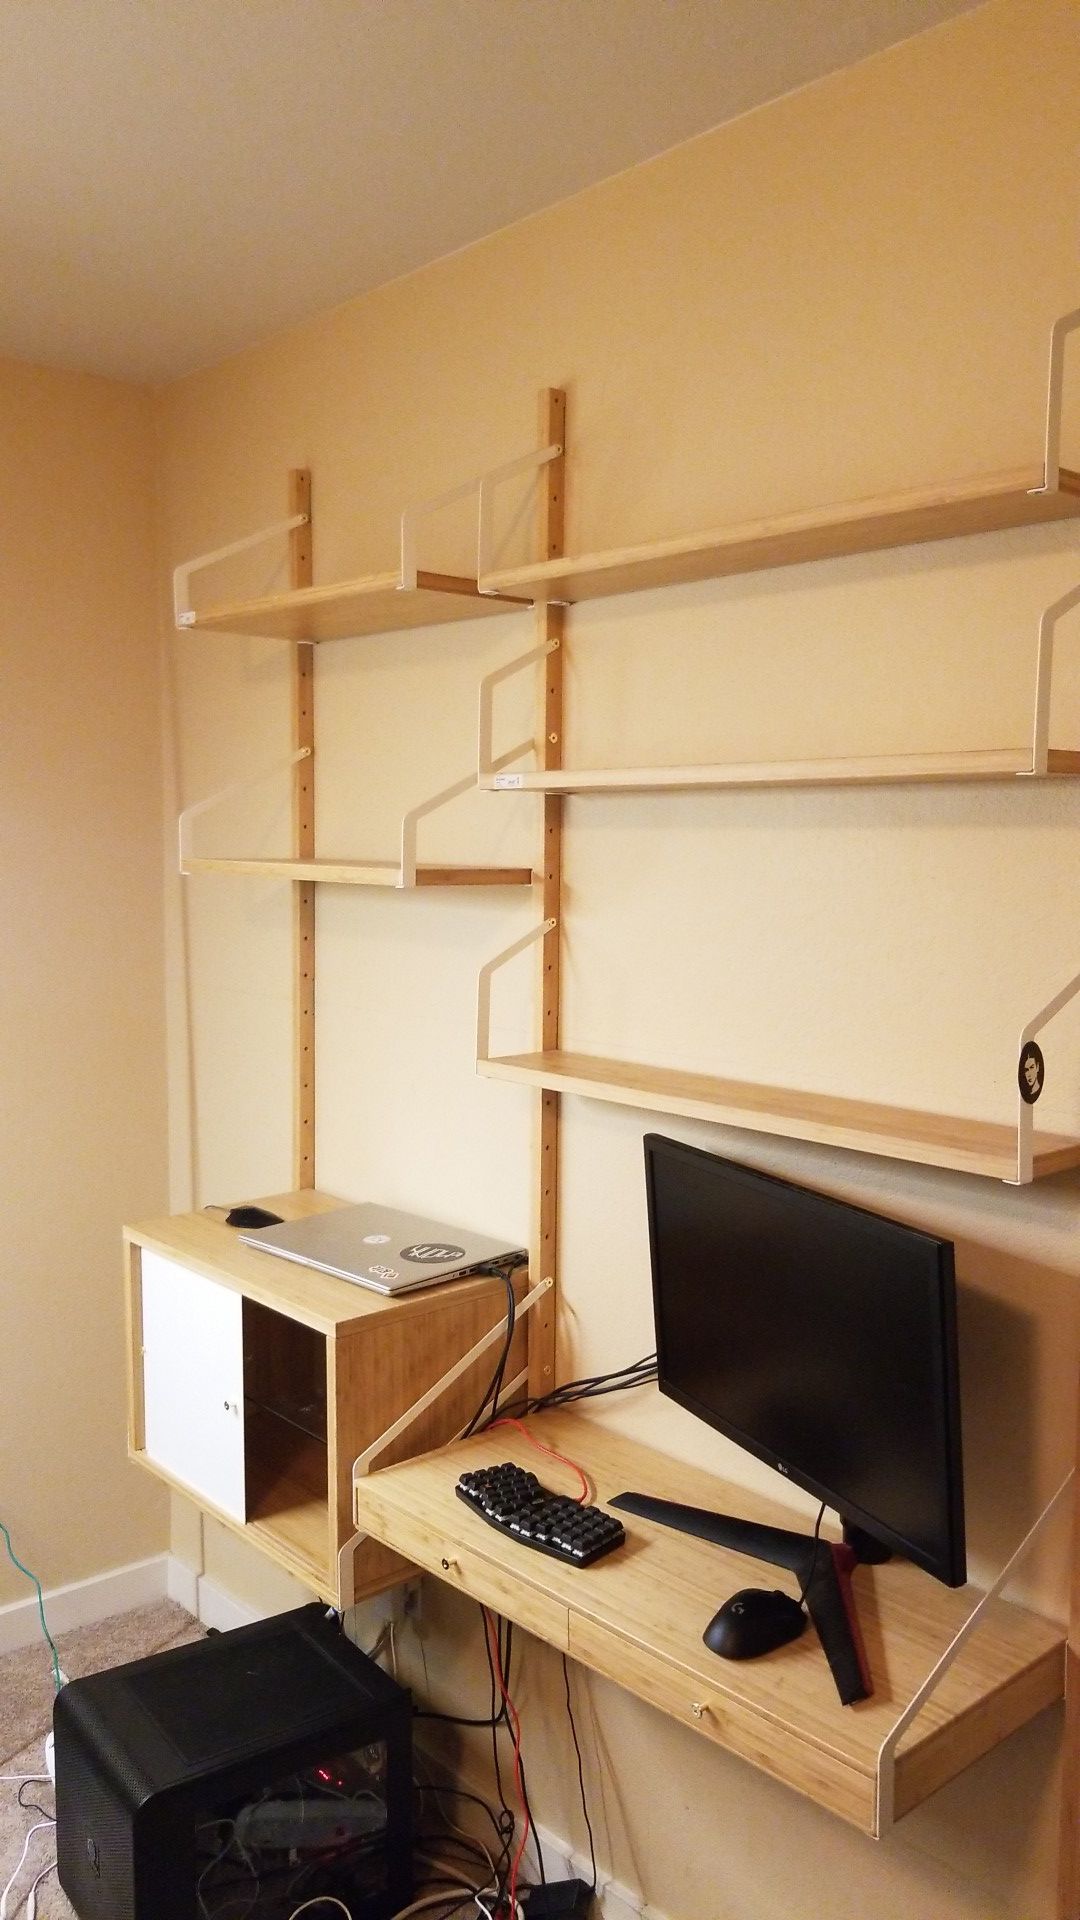 SVALNAS - IKEA Bookshelf / Desk